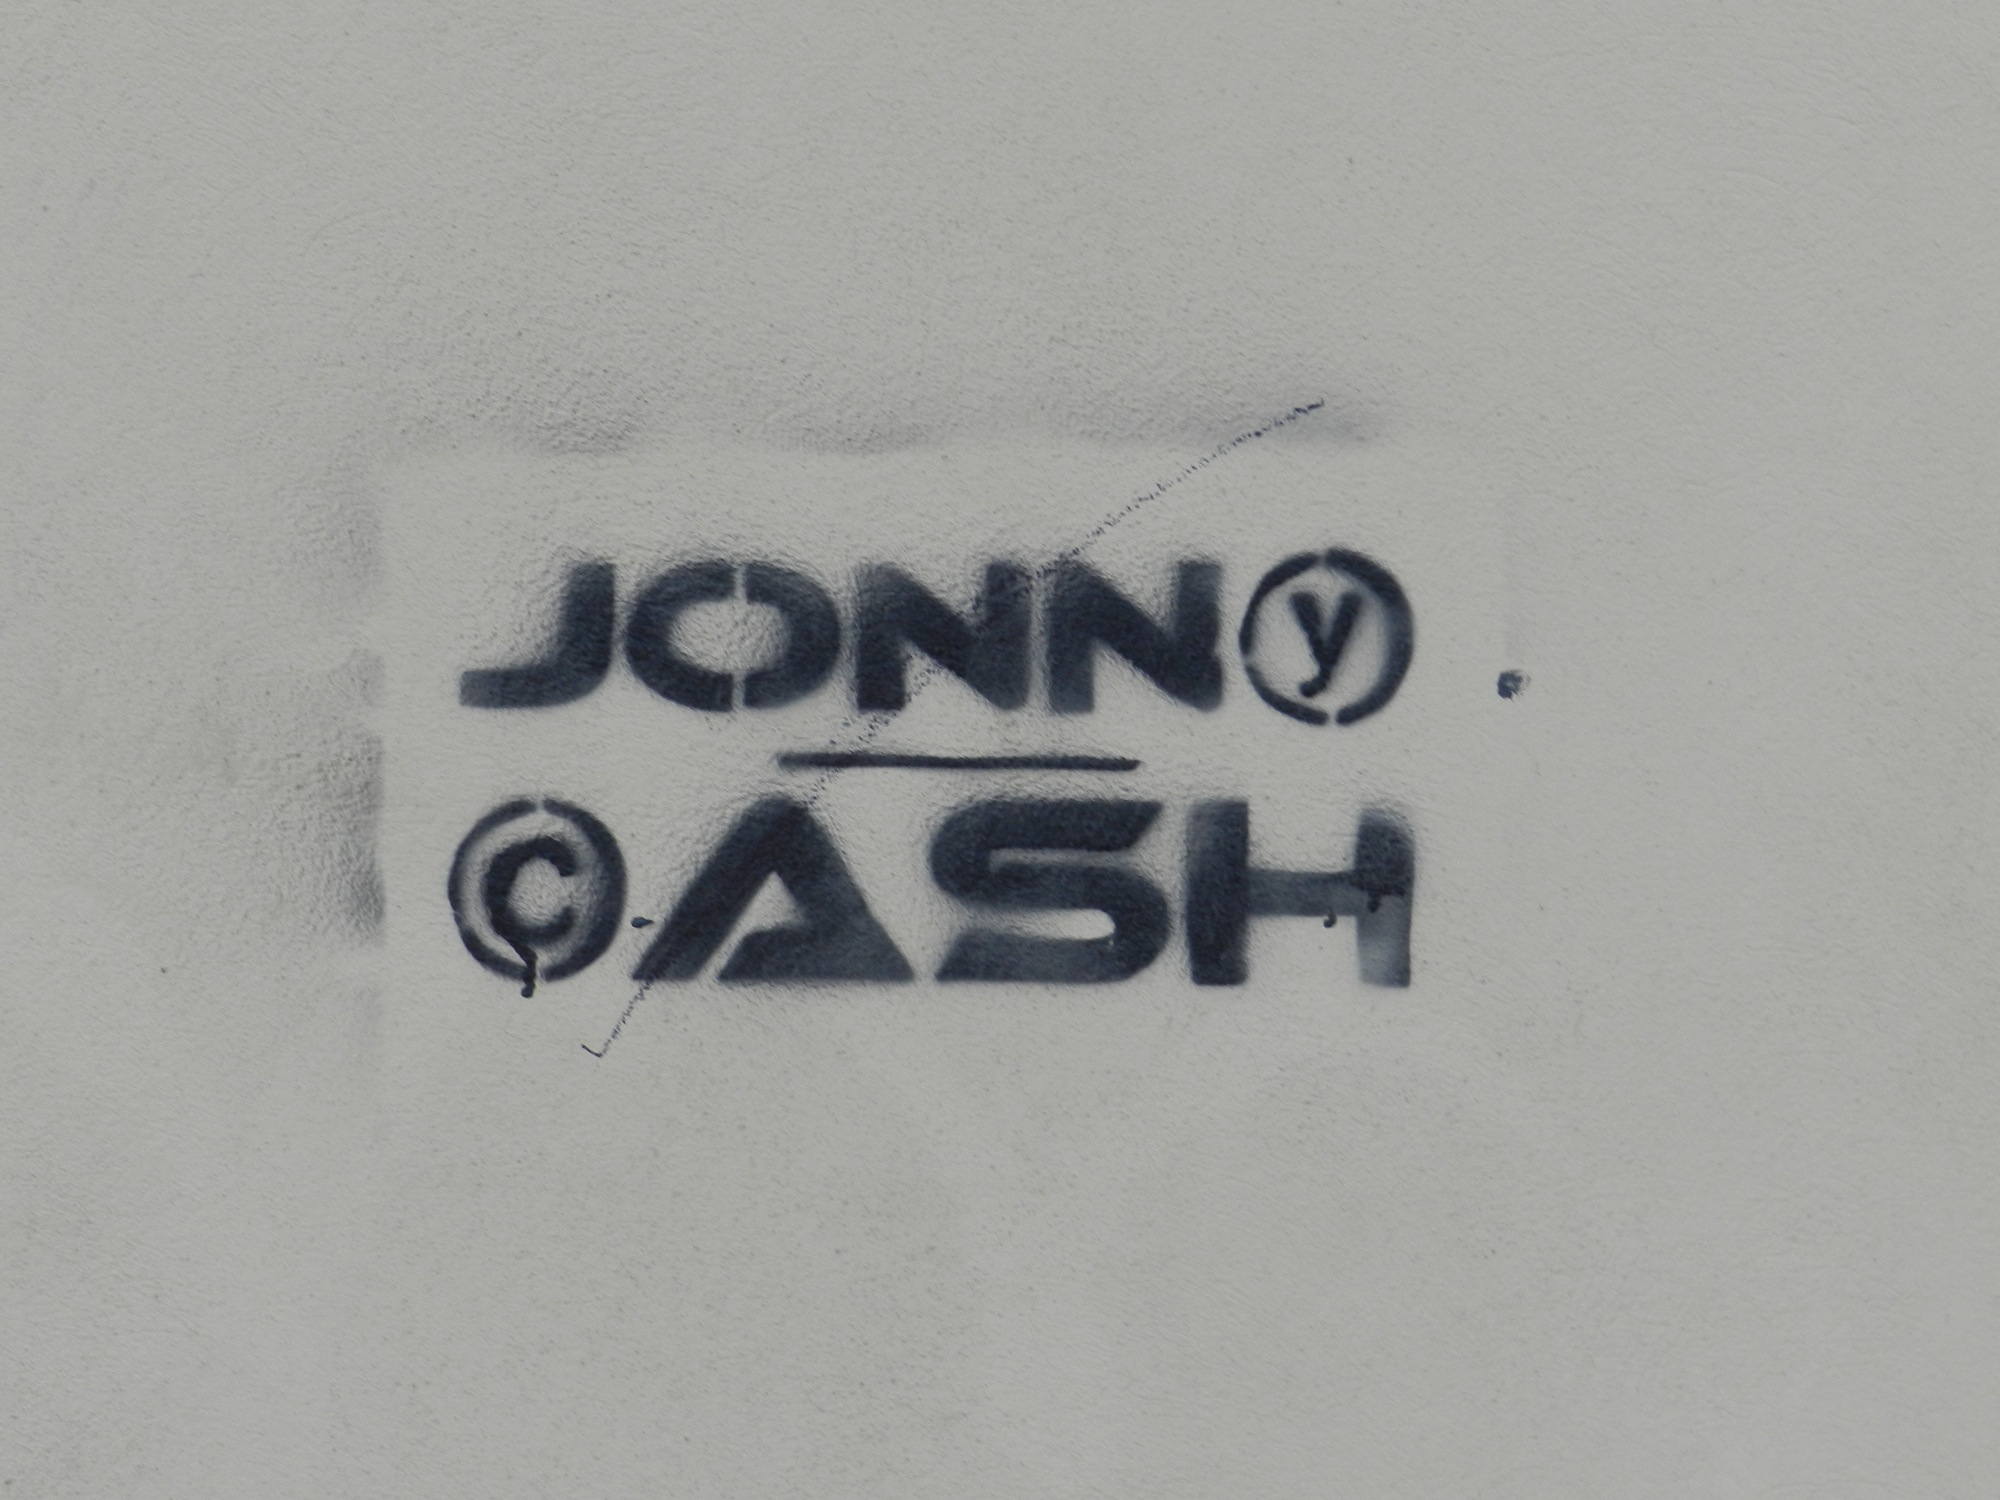 Detailaufnahme der Johnny Cash Spray Aufschrift